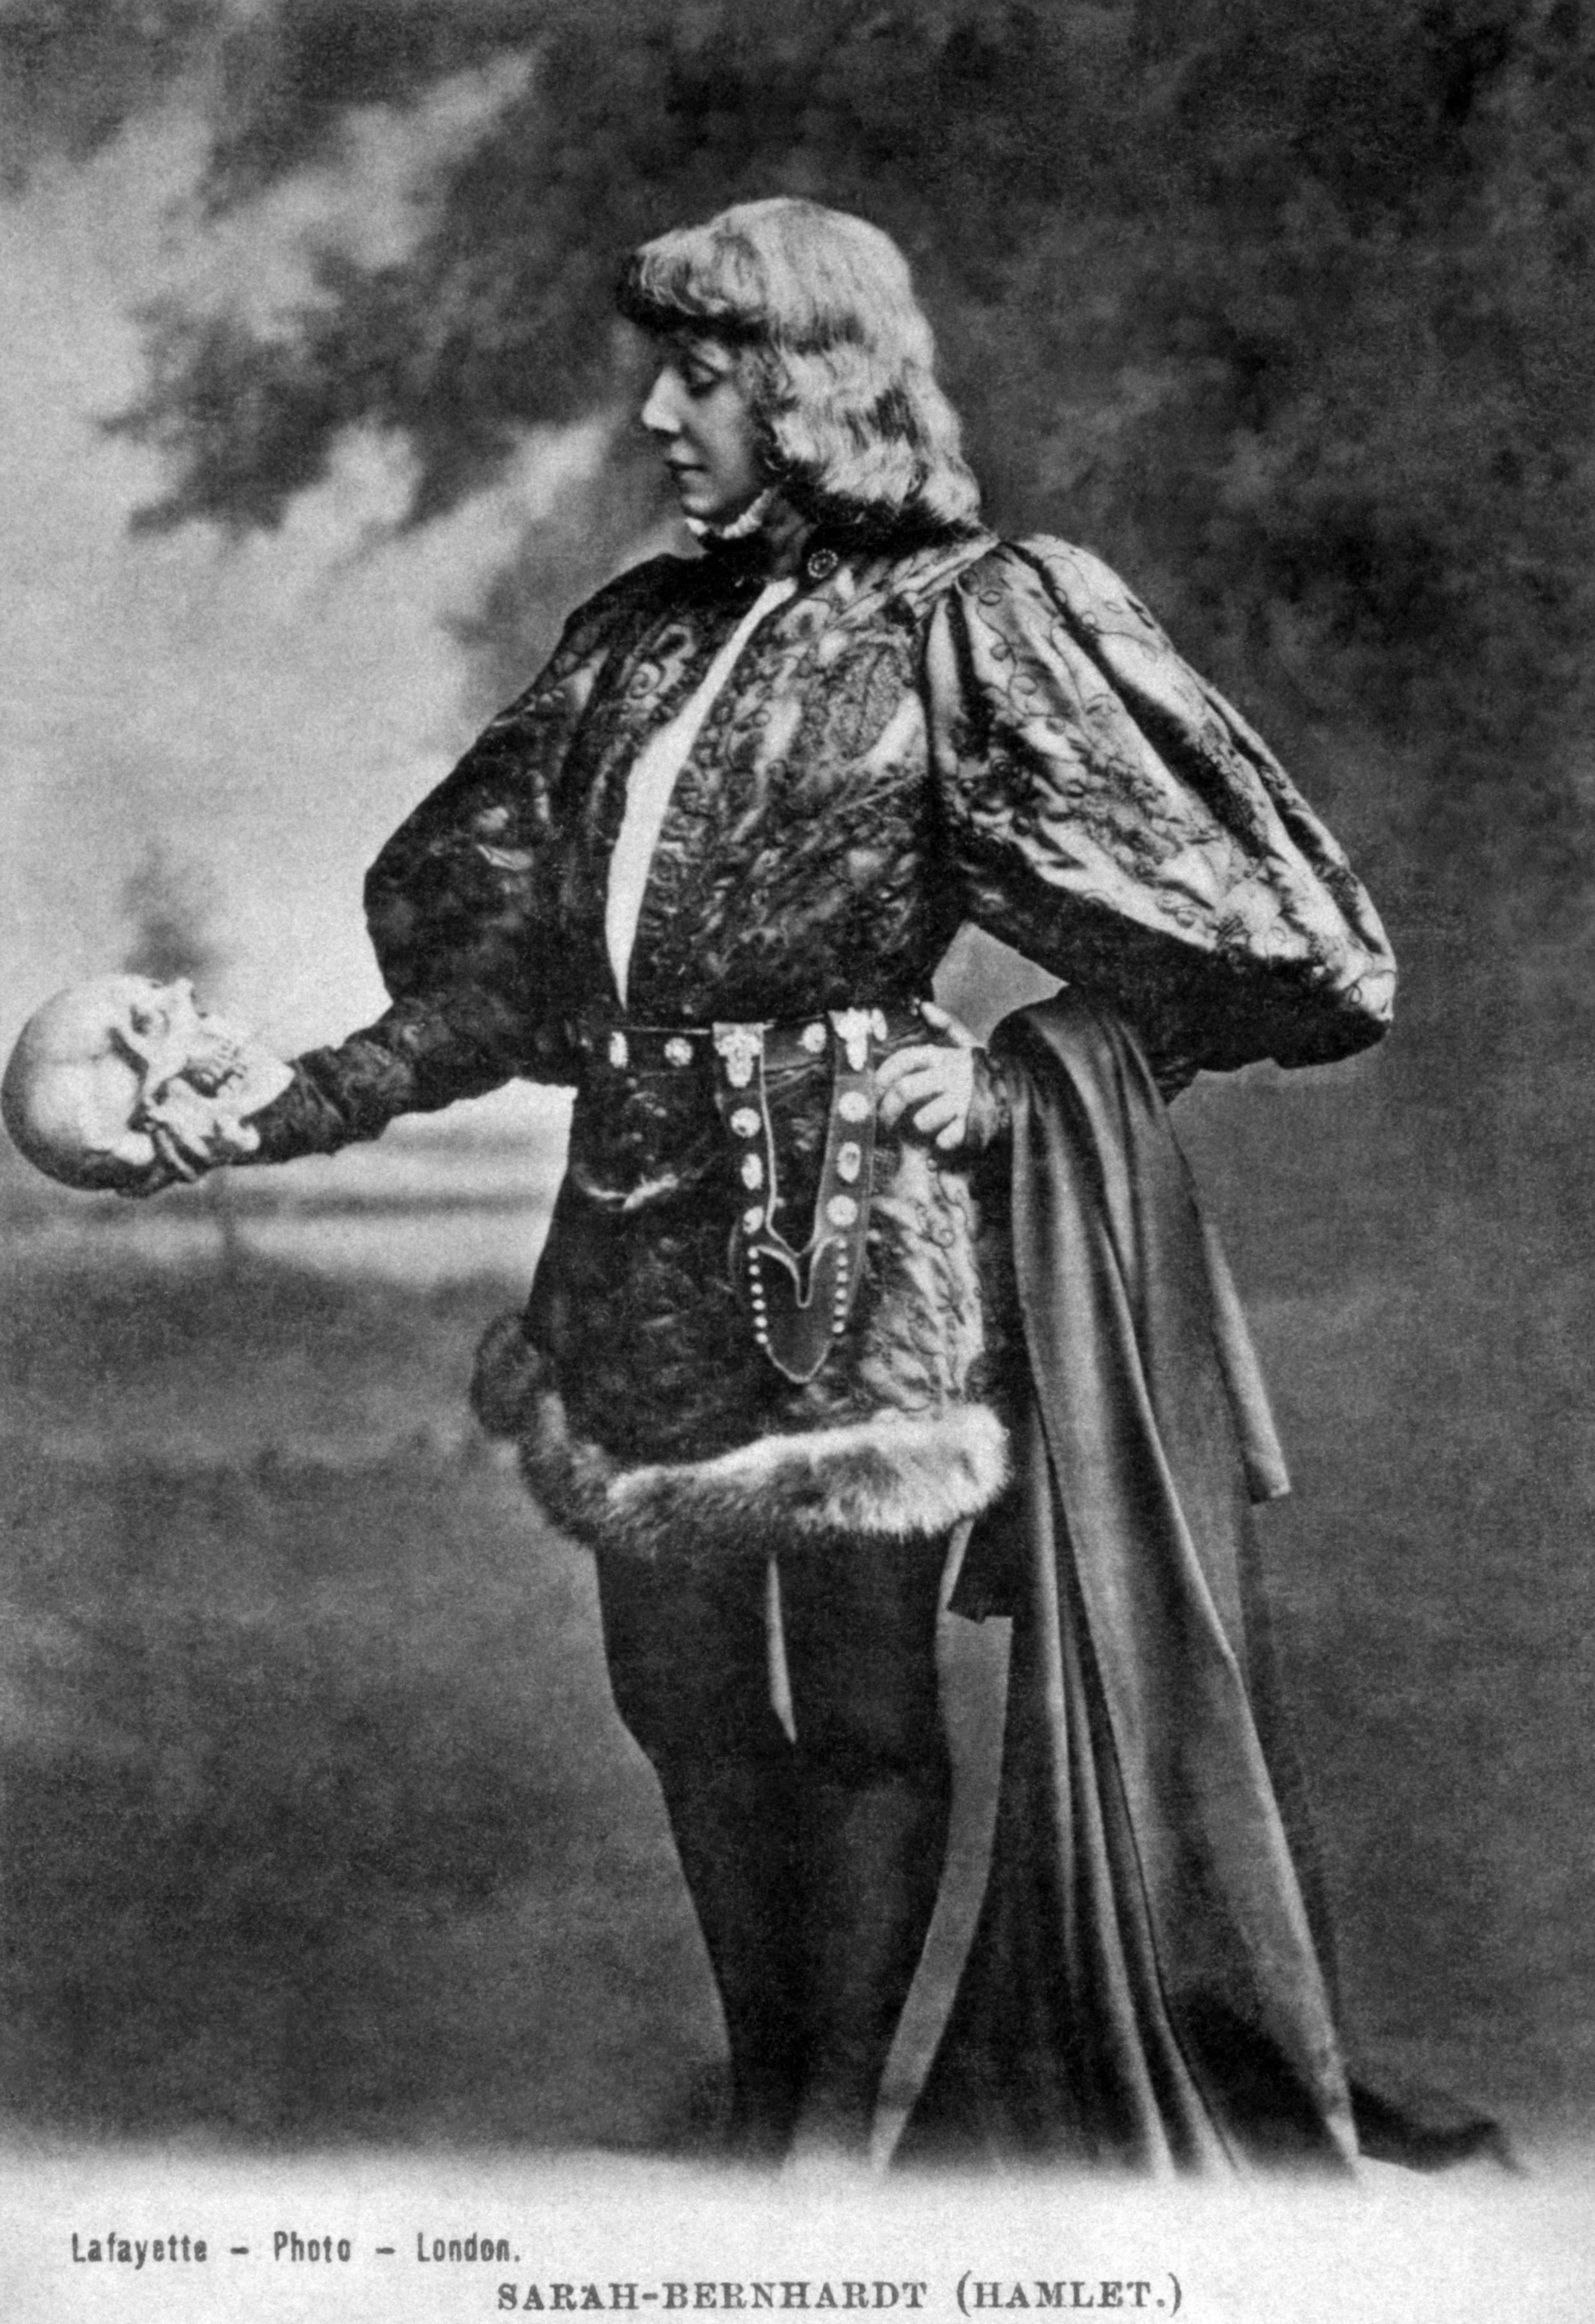 Sarah Bernhardt Hamlet Broadway